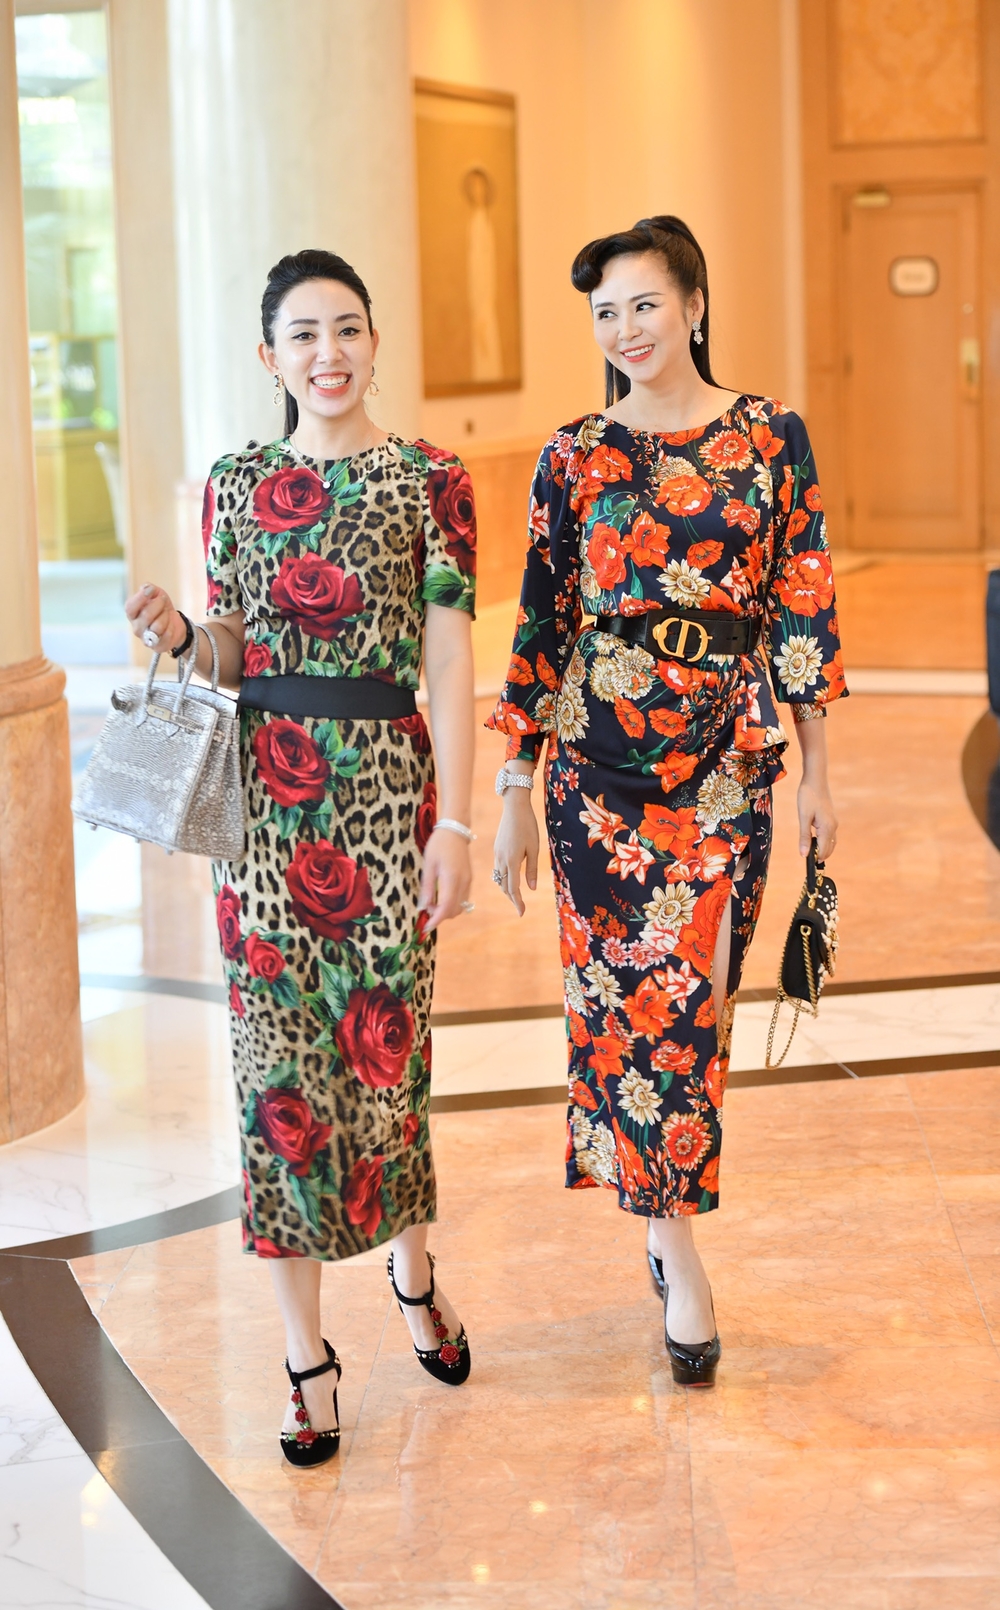 Nữ doanh nhân Phạm Quỳnh (bên trái) trong một thiết kế từ nhà mốt D&G